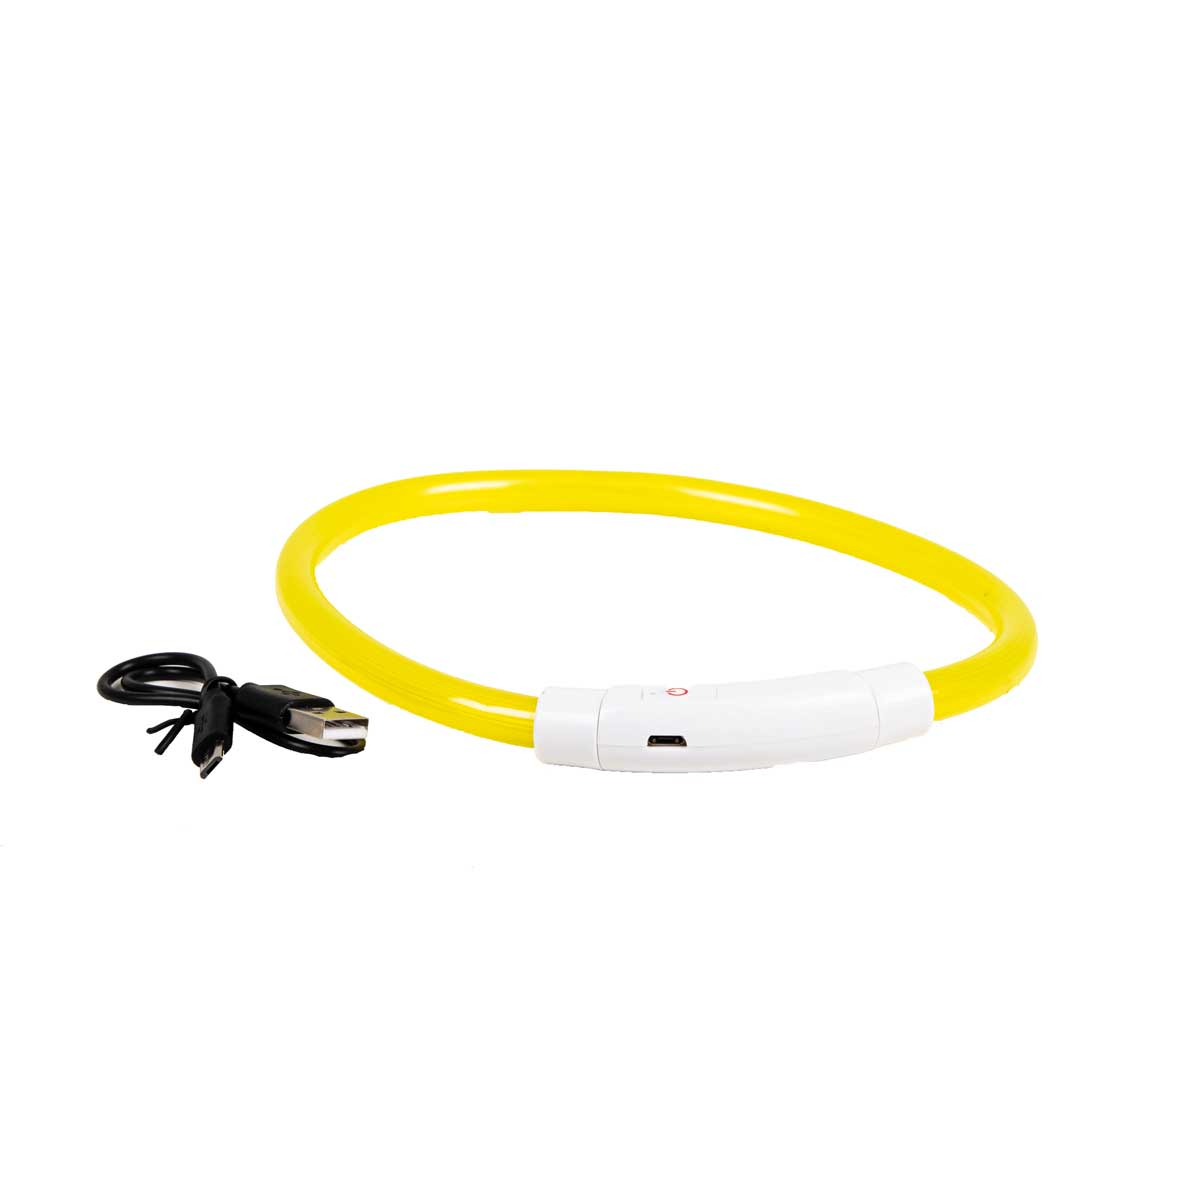 Collare anello luminoso giallo USB Zolia Lumoz